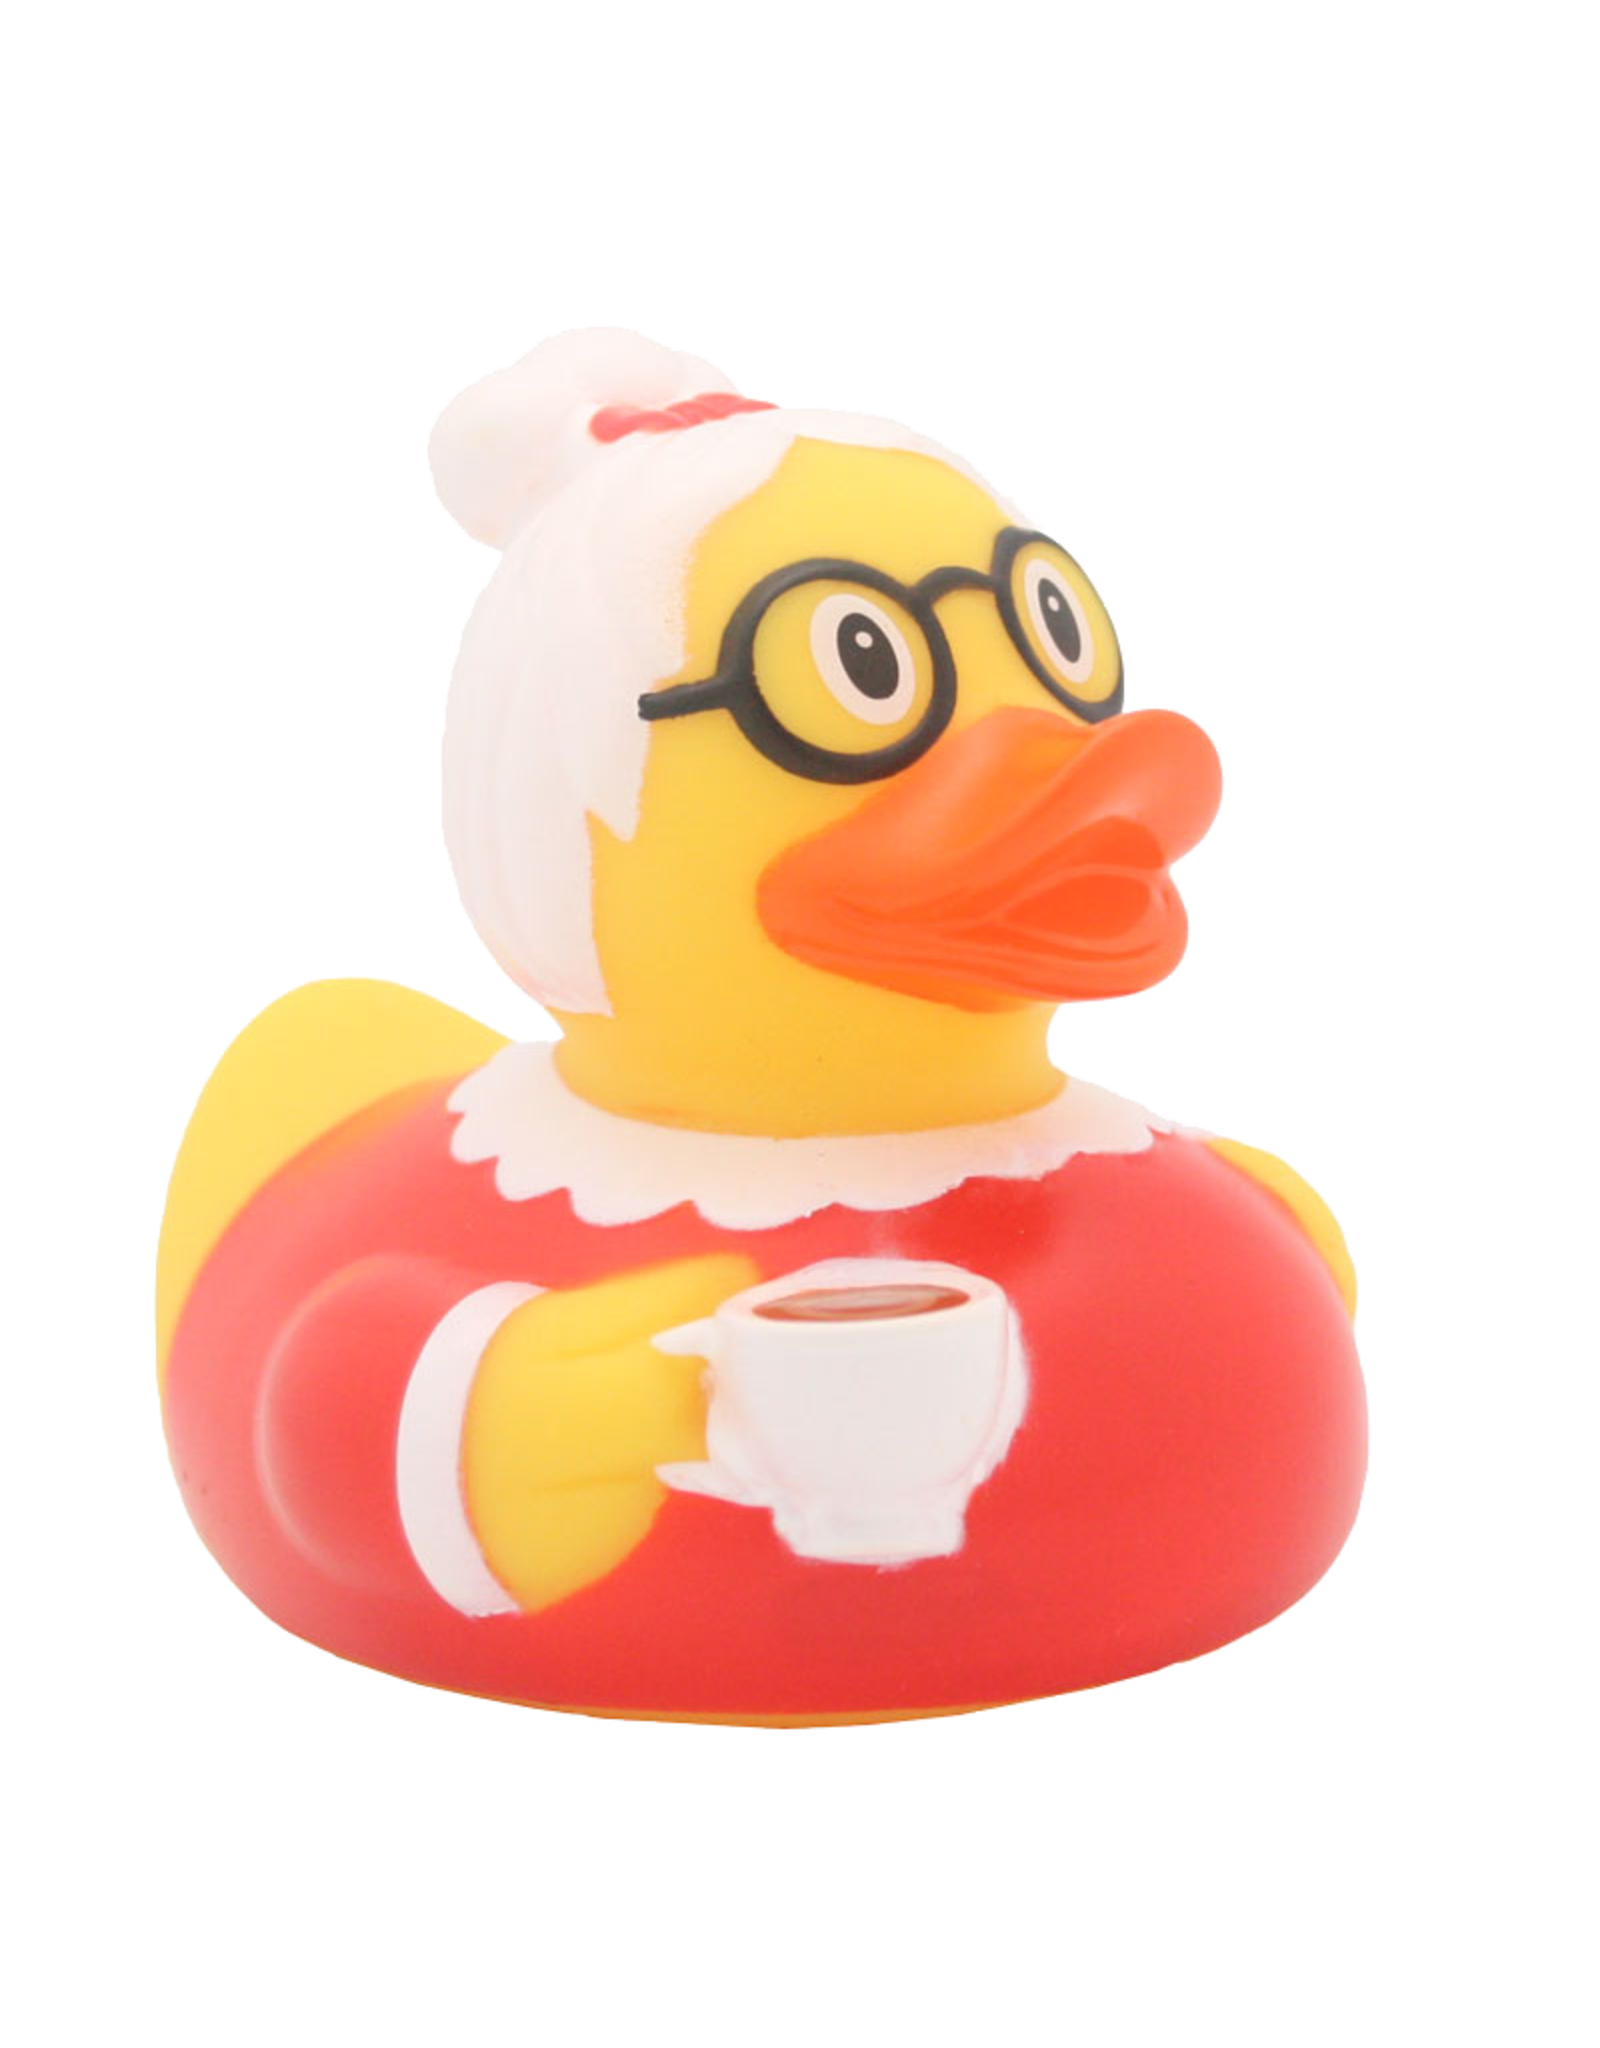 Lilalu Granny Rubber Duck